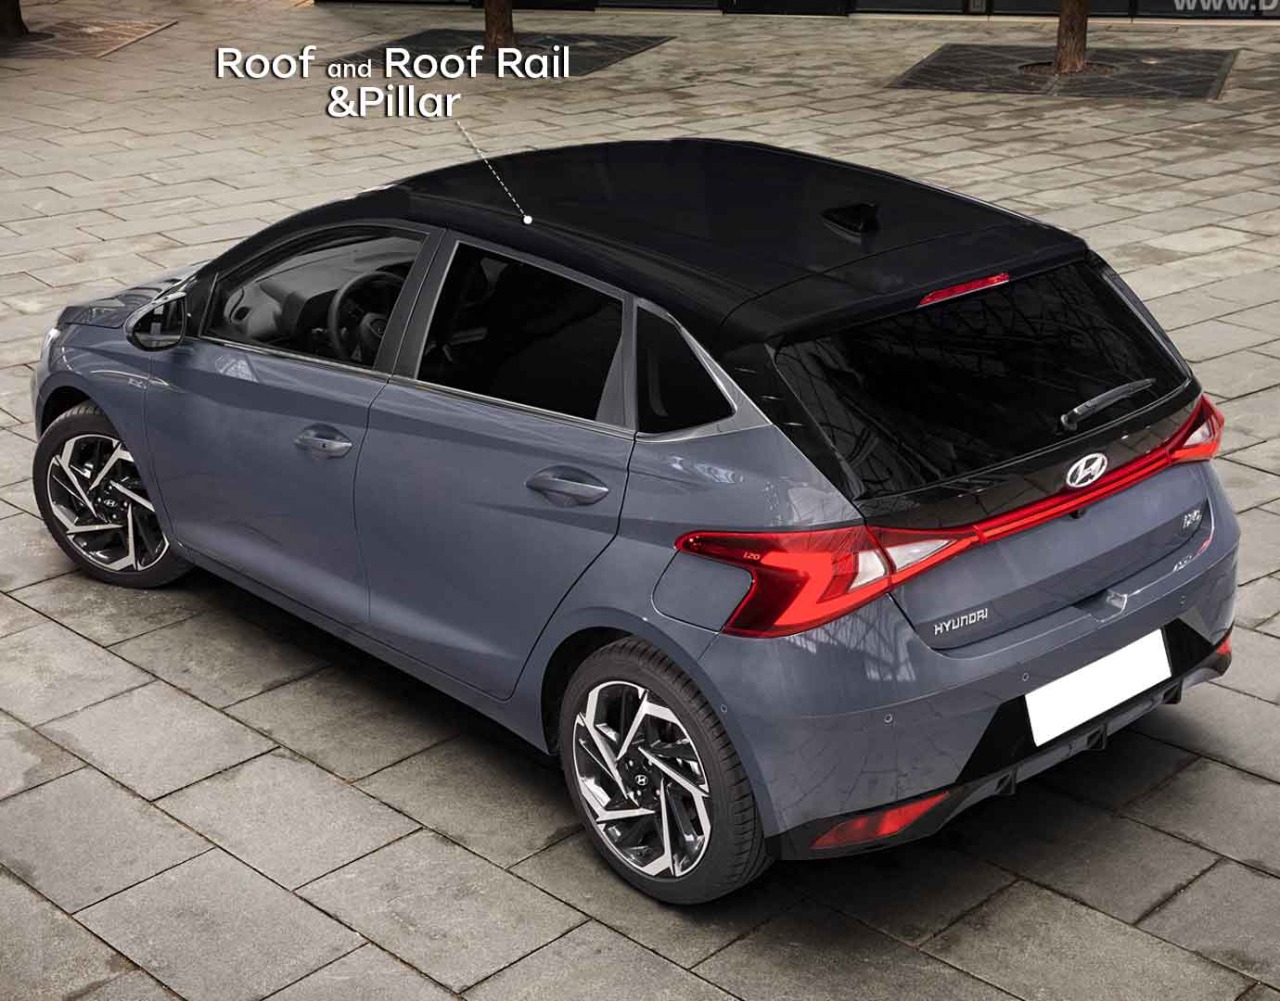 Hyundai i20 roof wrap